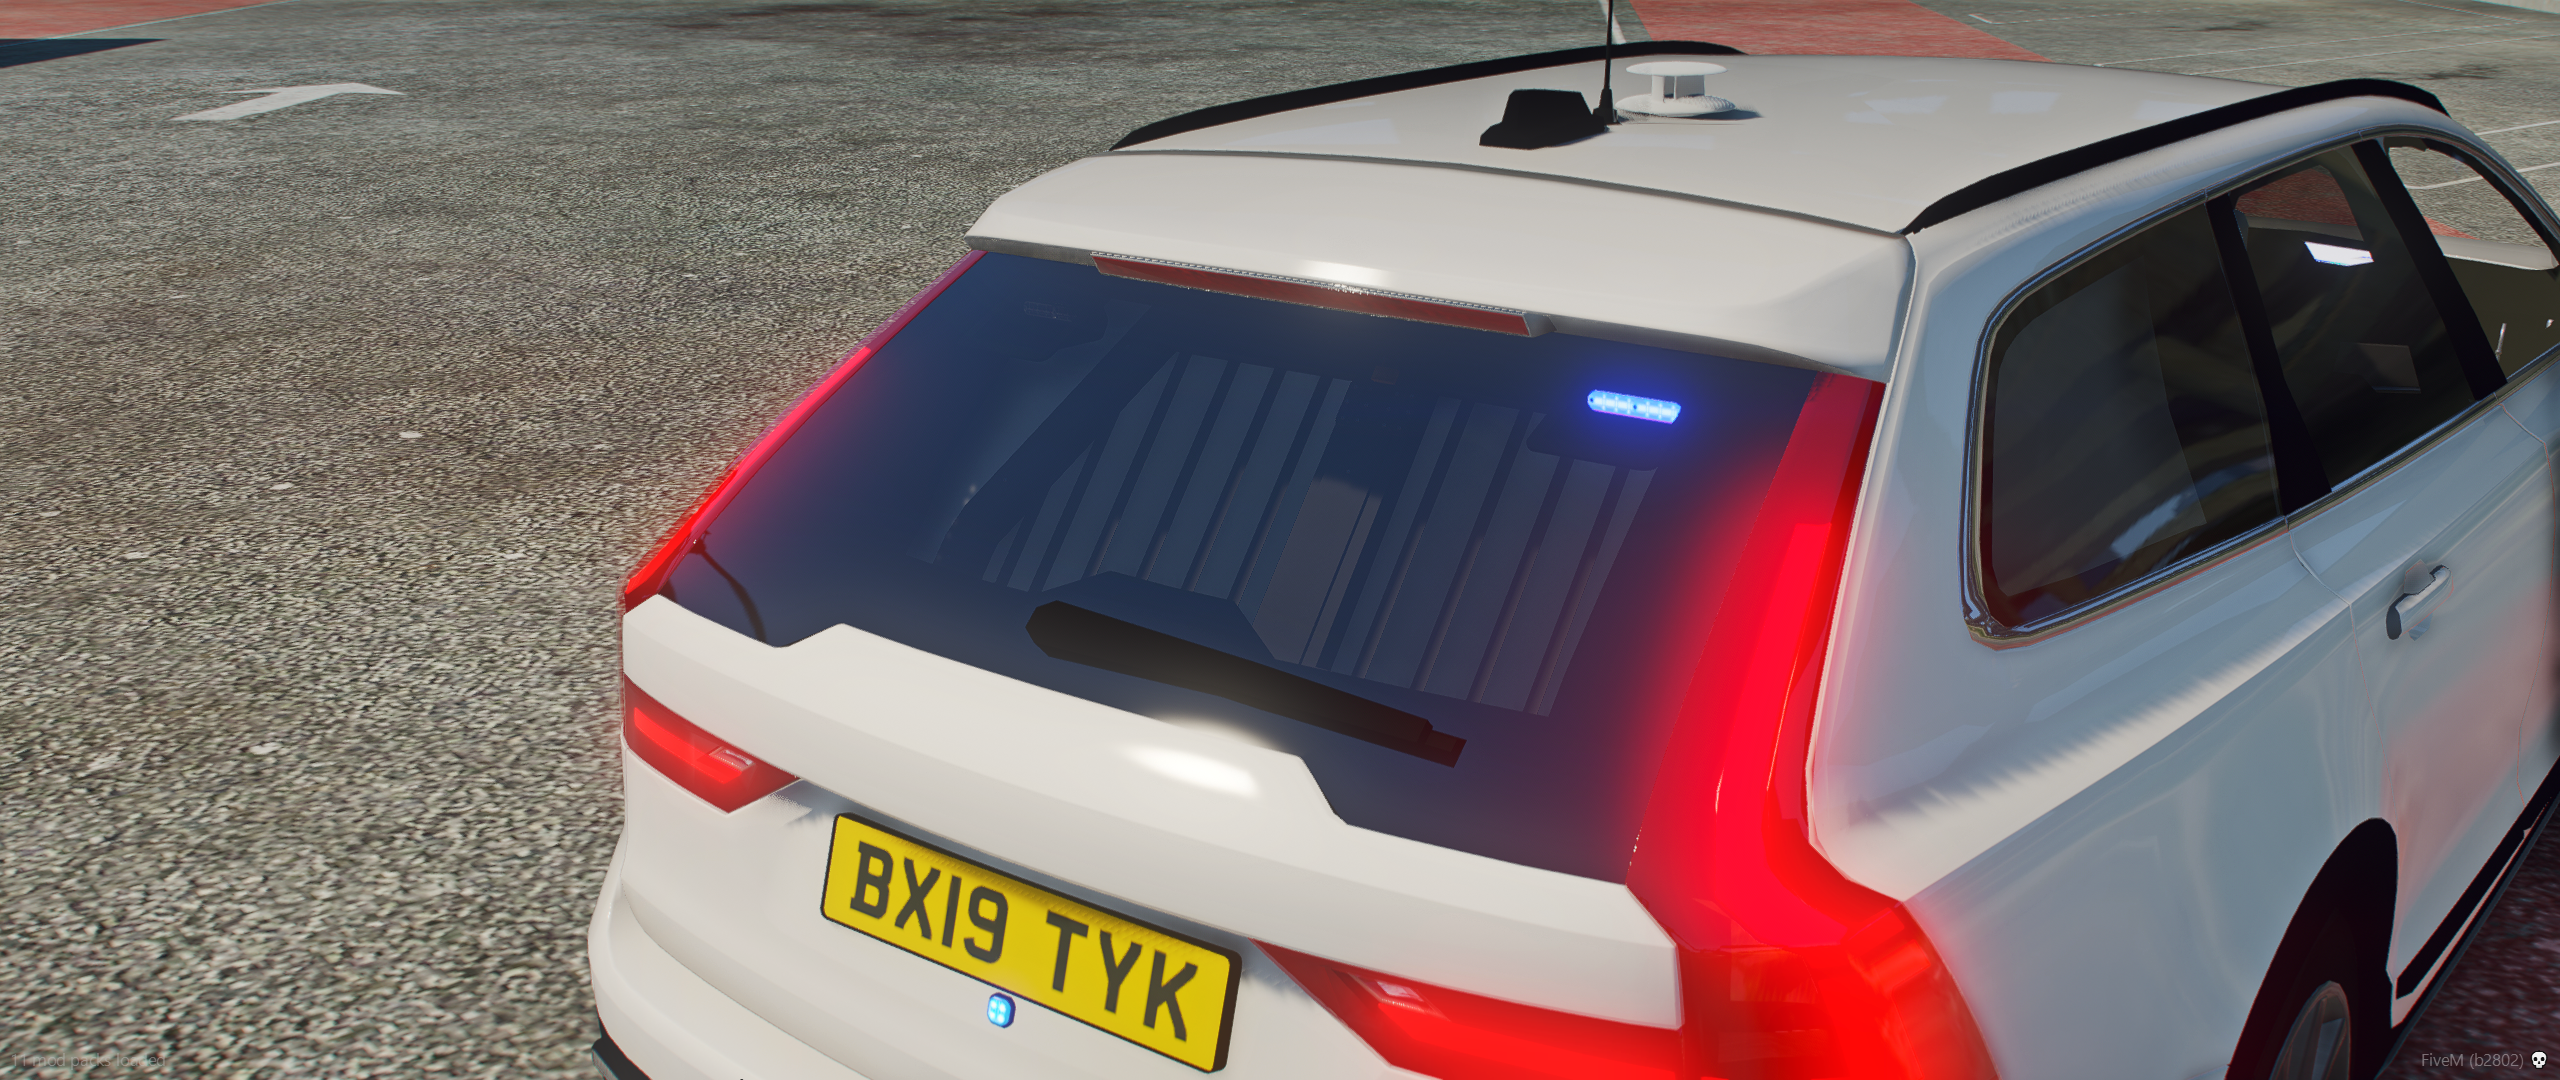 2019 Volvo V90cc (Police/DSU)